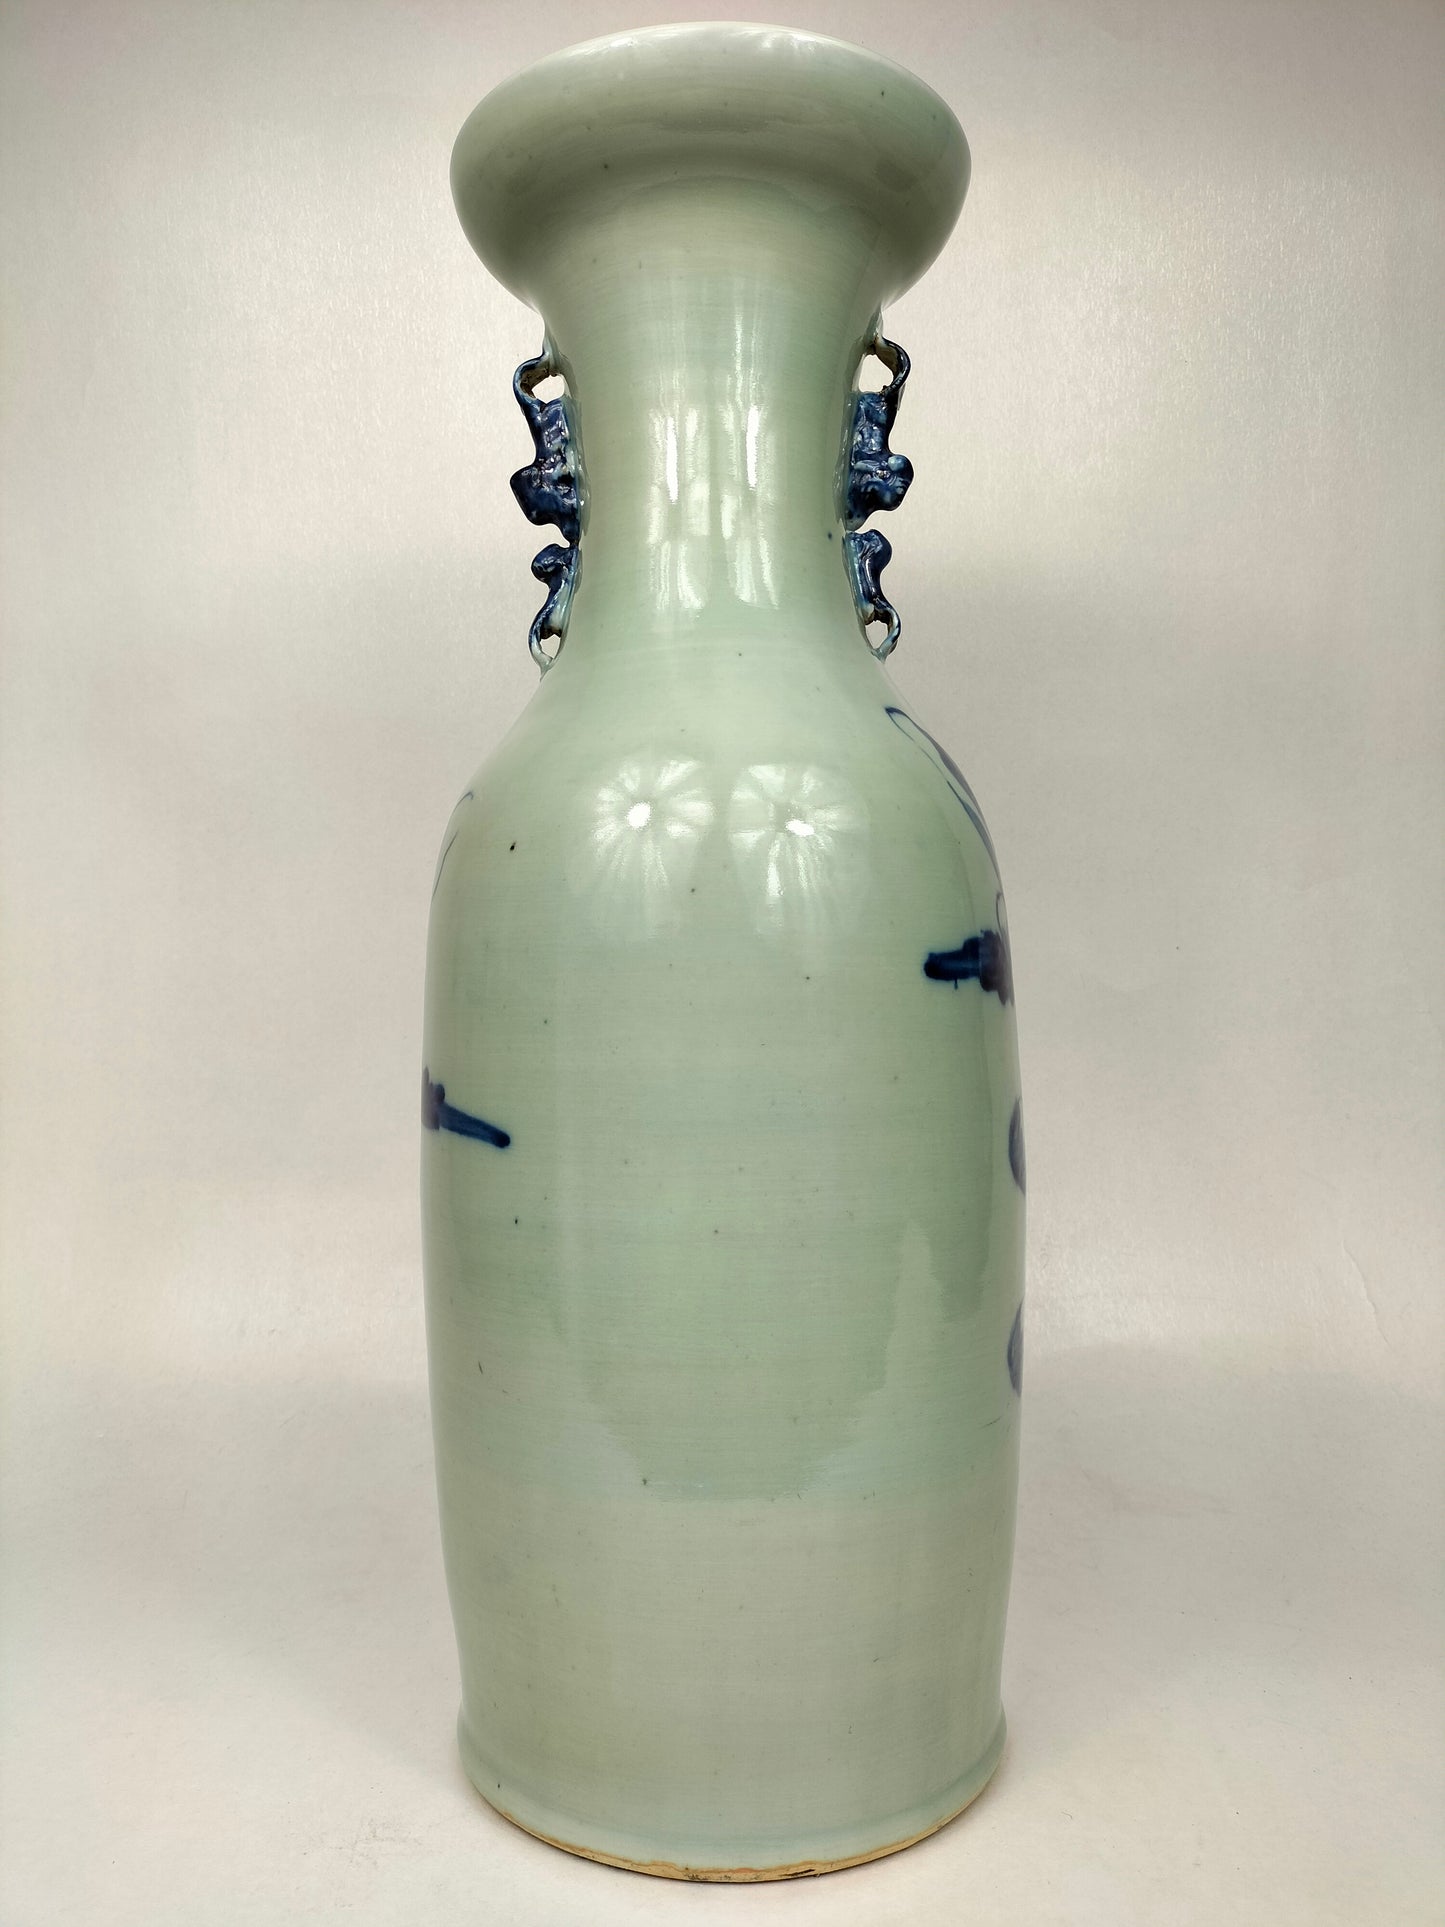 Grand vase antique chinois en céladon à décor de sages // Dynastie Qing - 19ème siècle